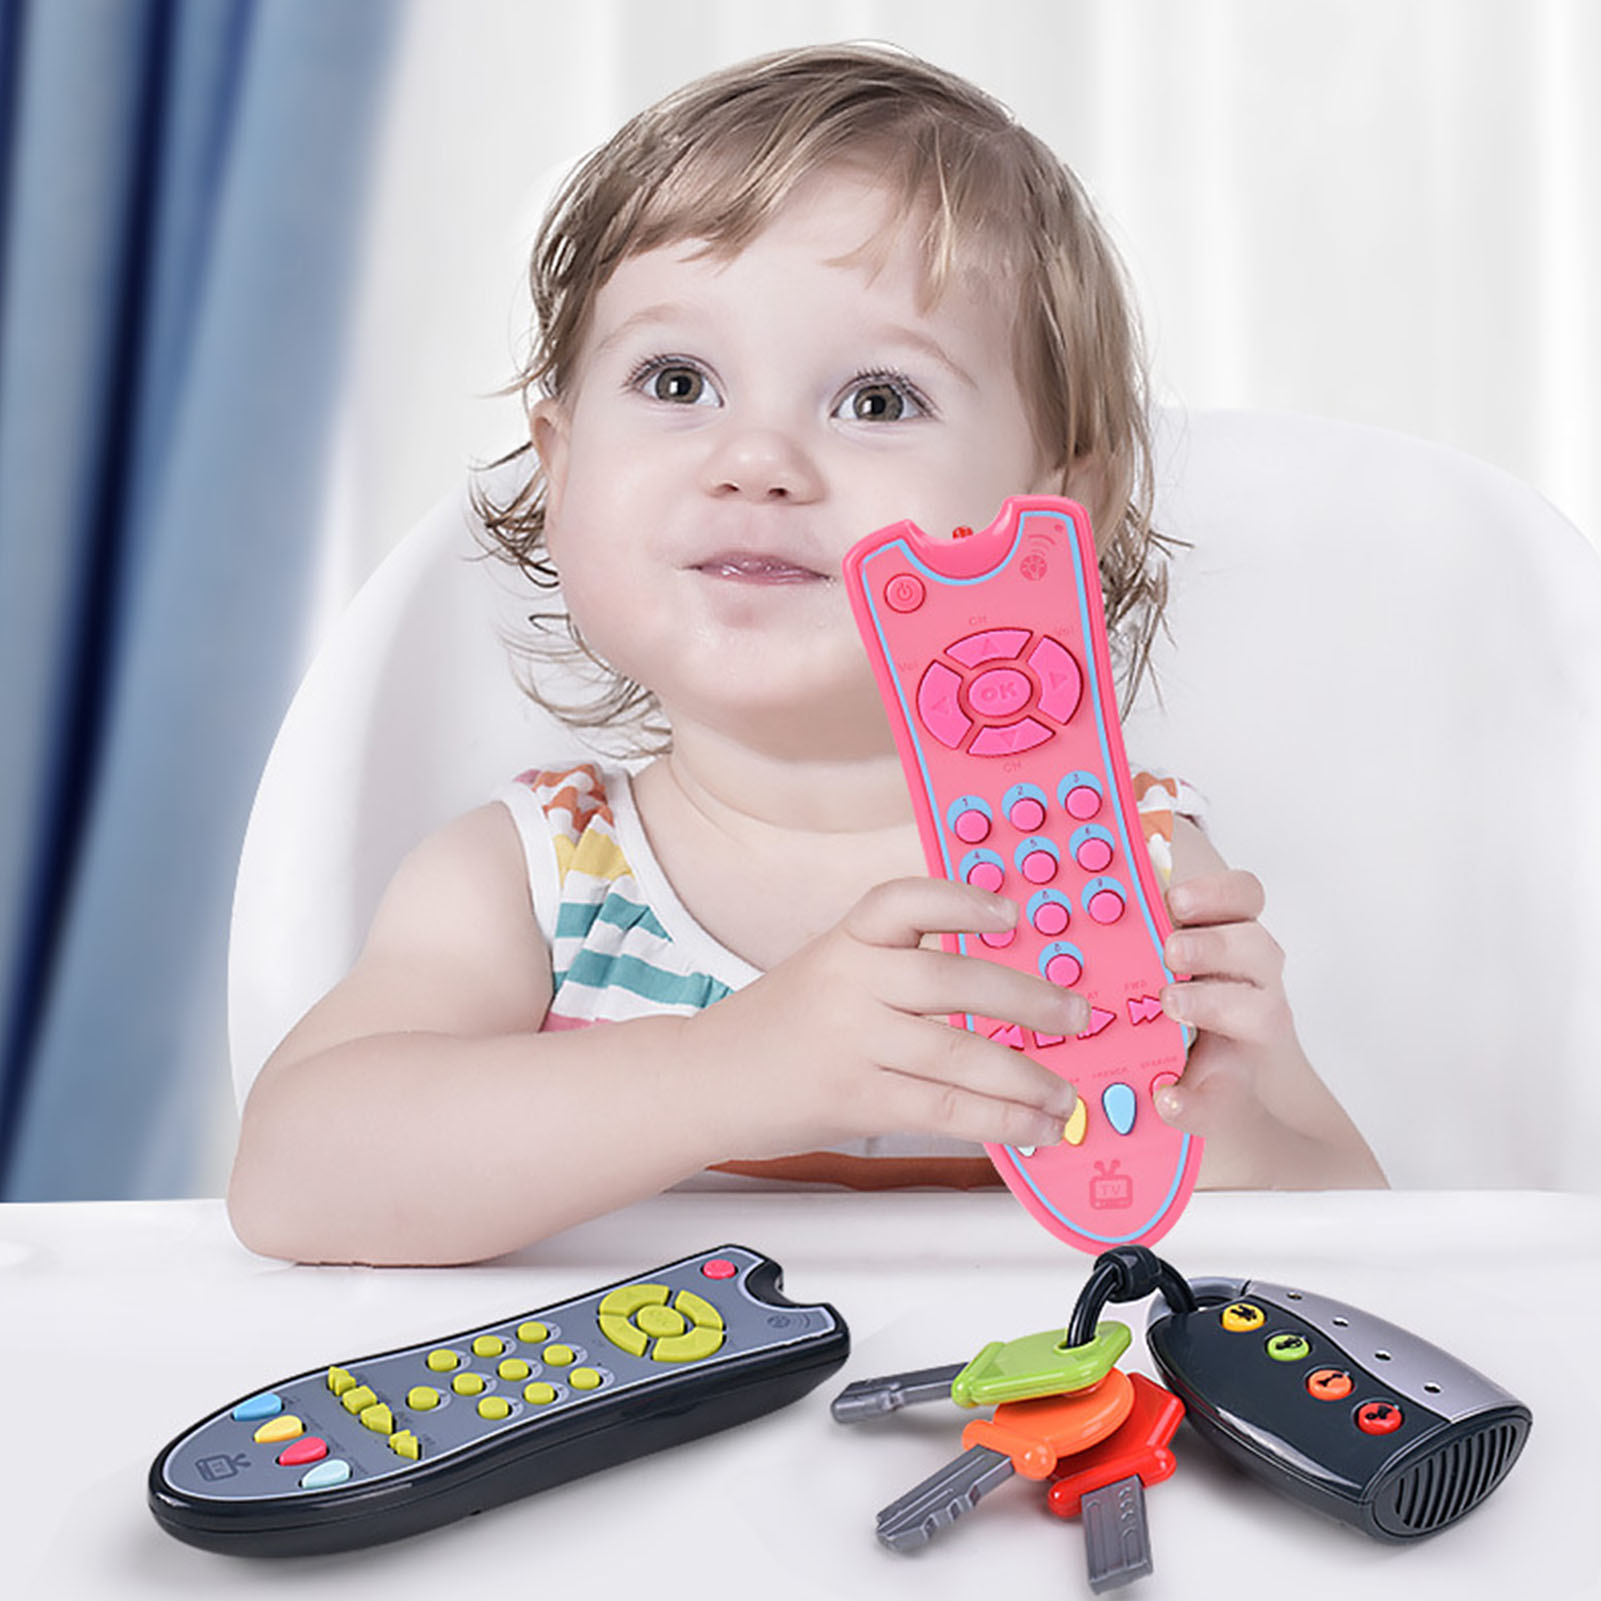 아기 원격 제어 장난감, 3 가지 언어 모드, 영어, 스페인어, 프랑스어, 6 개